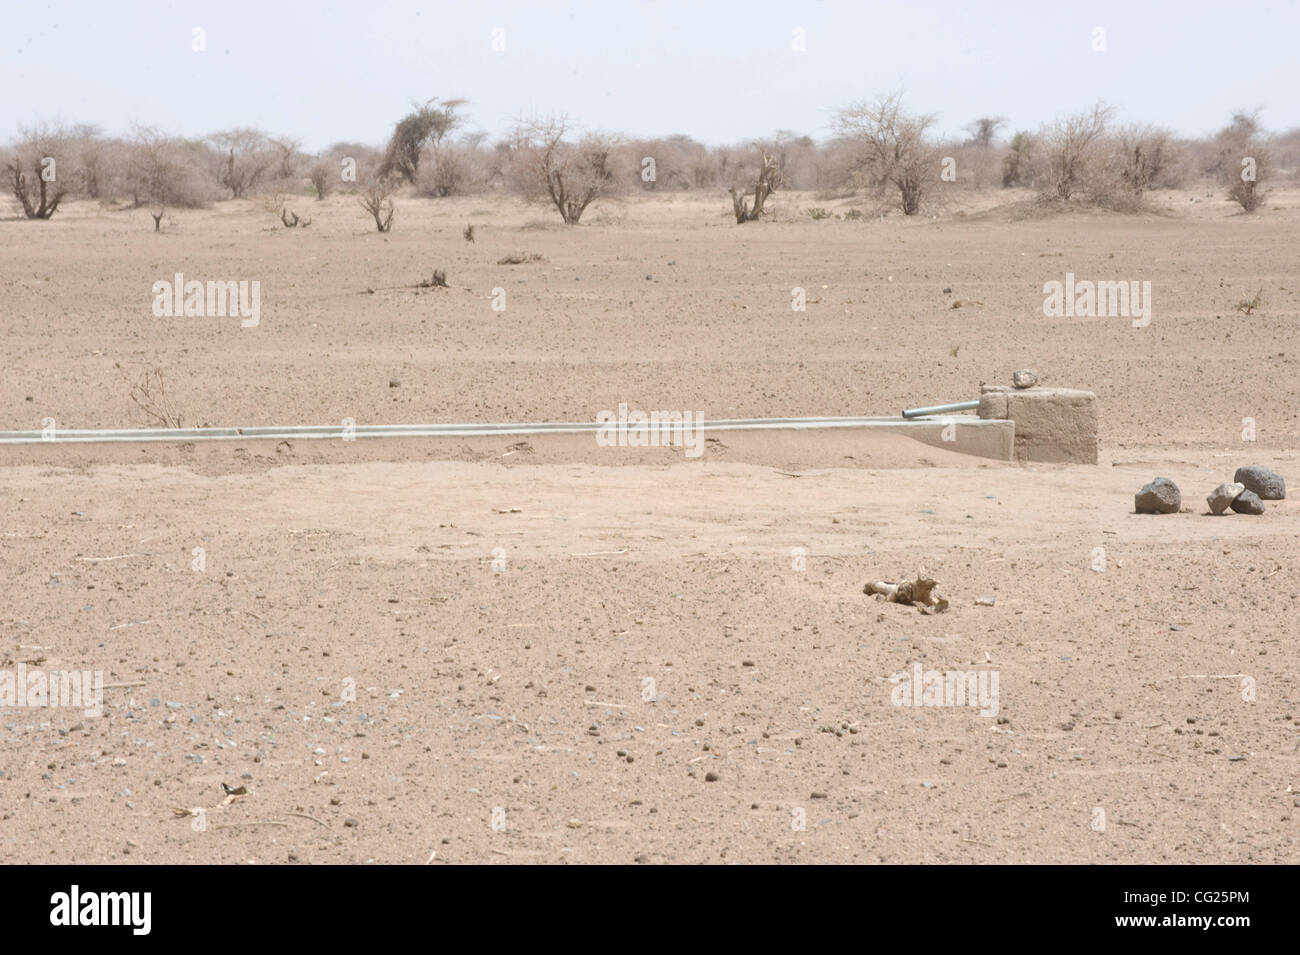 28. Juli 2011 - Shinele Zone, Äthiopien - 28. Juli 2011, Dira Dawa, Äthiopien - Rinder-Mulde des Multi-Use Wasser Punkt durch eine internationale nicht-Regierungsorganisation (NGO) in die Trockenzone Shinele der Ost-Äthiopien gebaut. Diese Wassertrog serviert lokale Vieh, während nahe gelegenen Armaturen fo sind Stockfoto